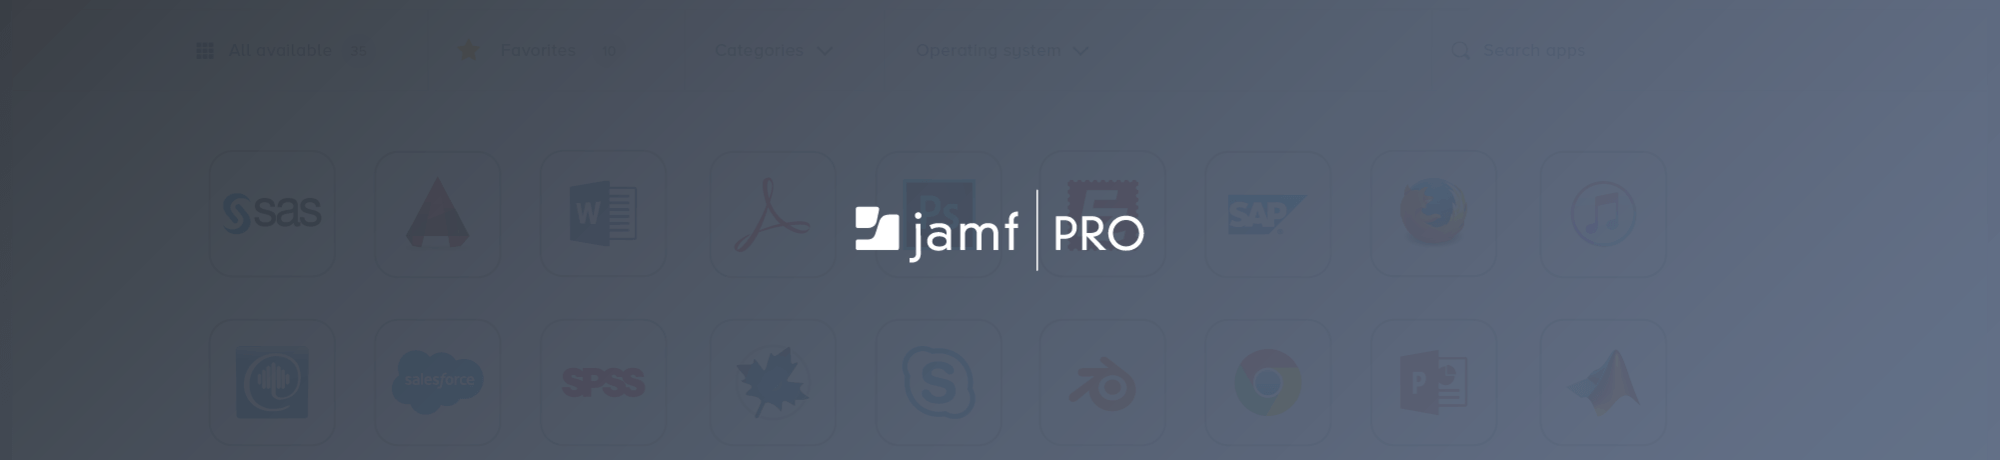 JAMF Logo - Jamf Pro